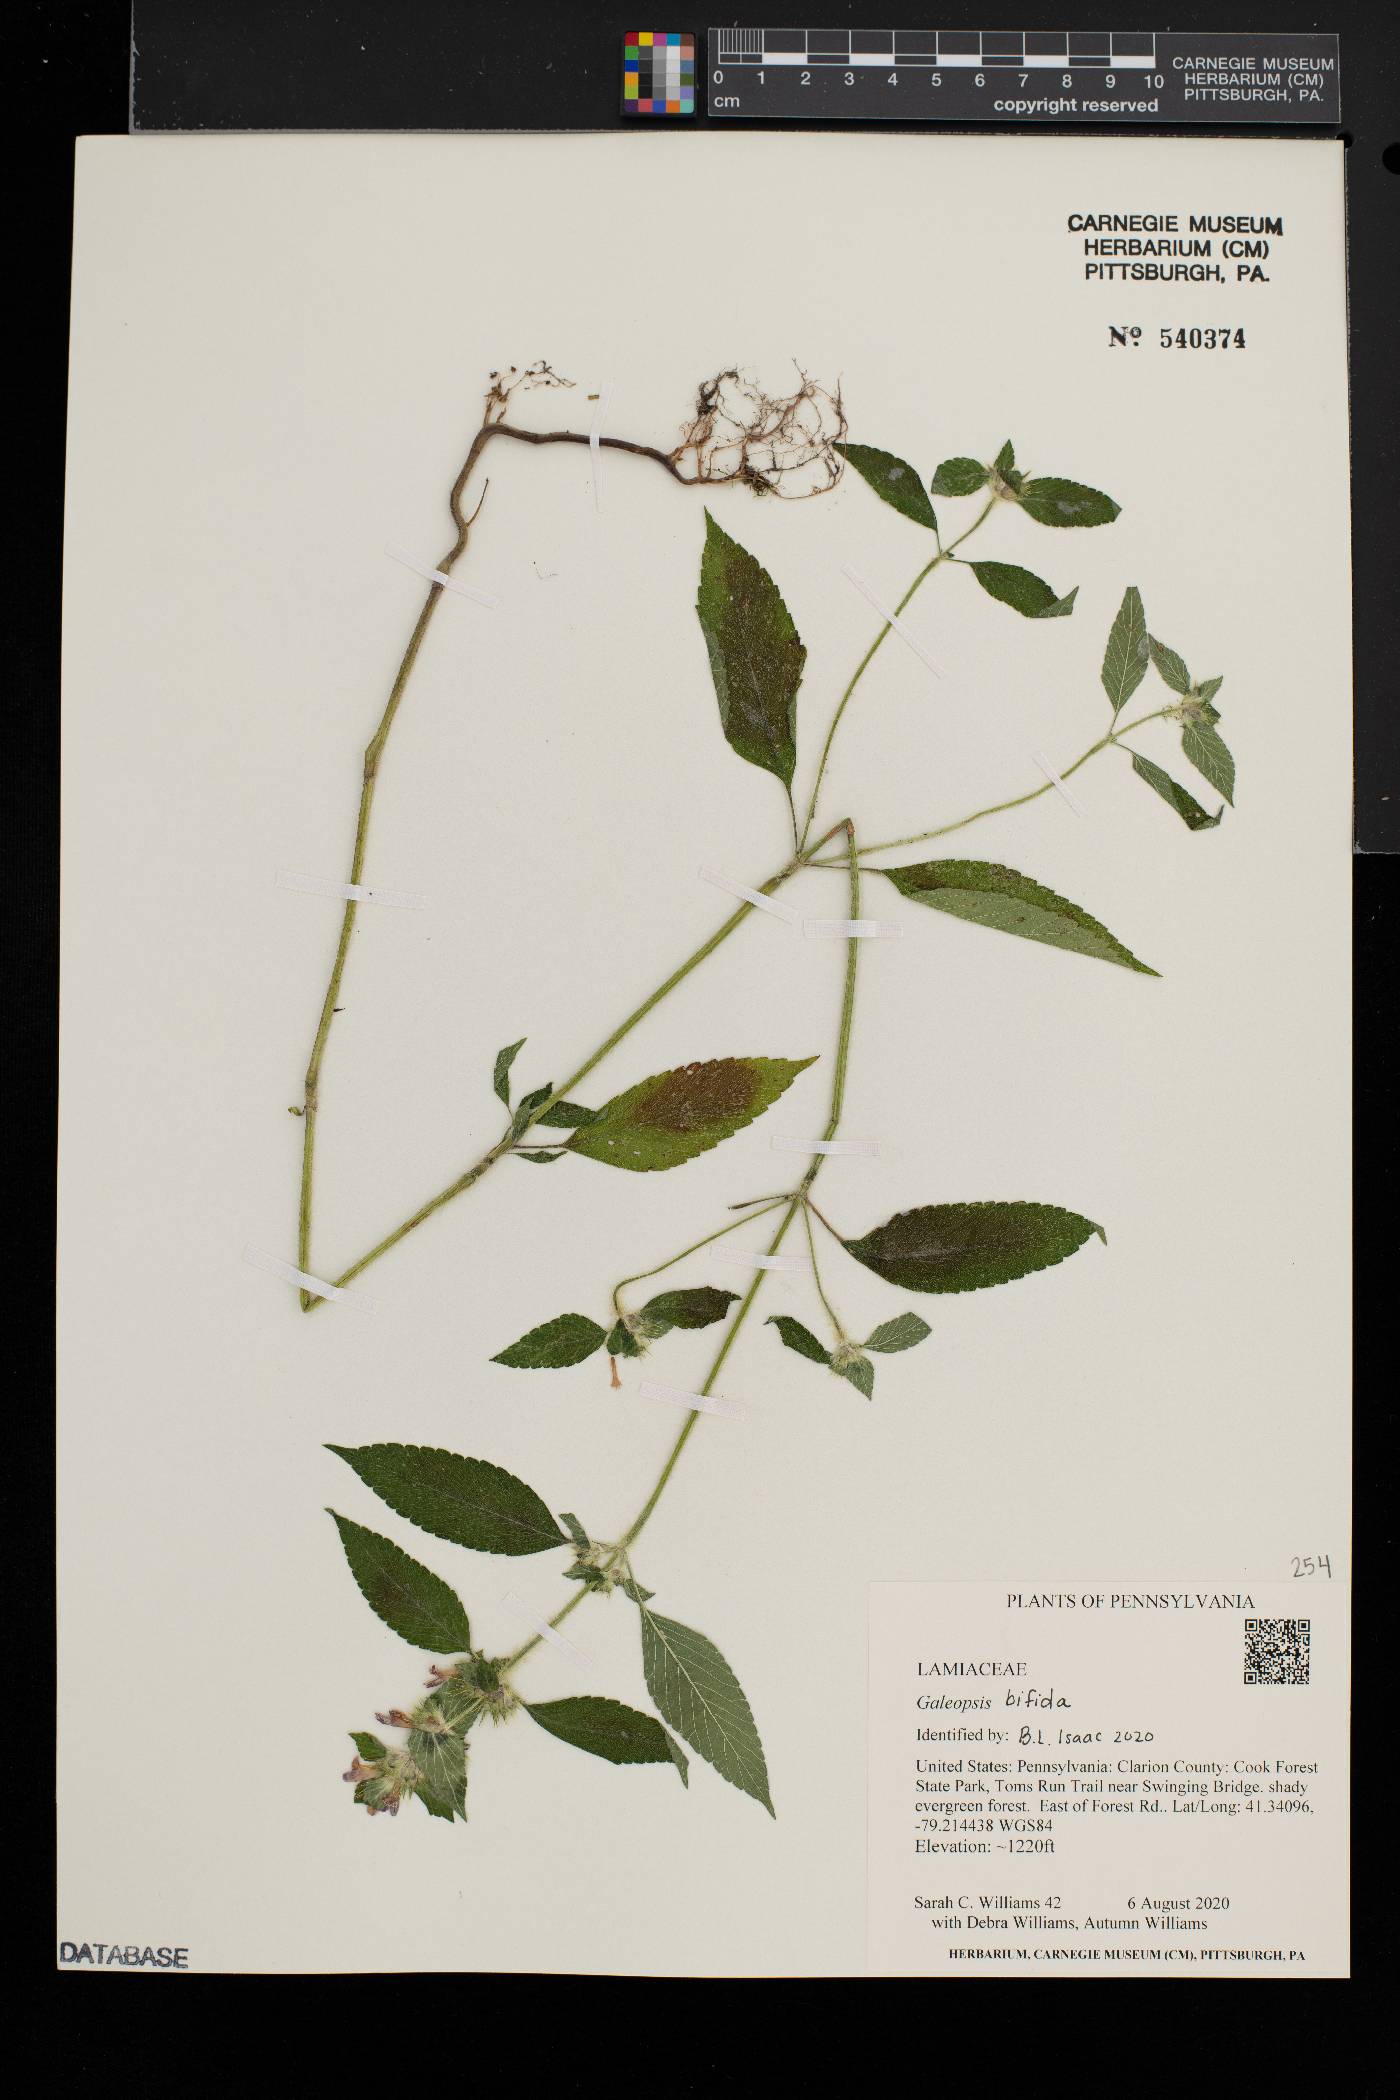 Galeopsis bifida image